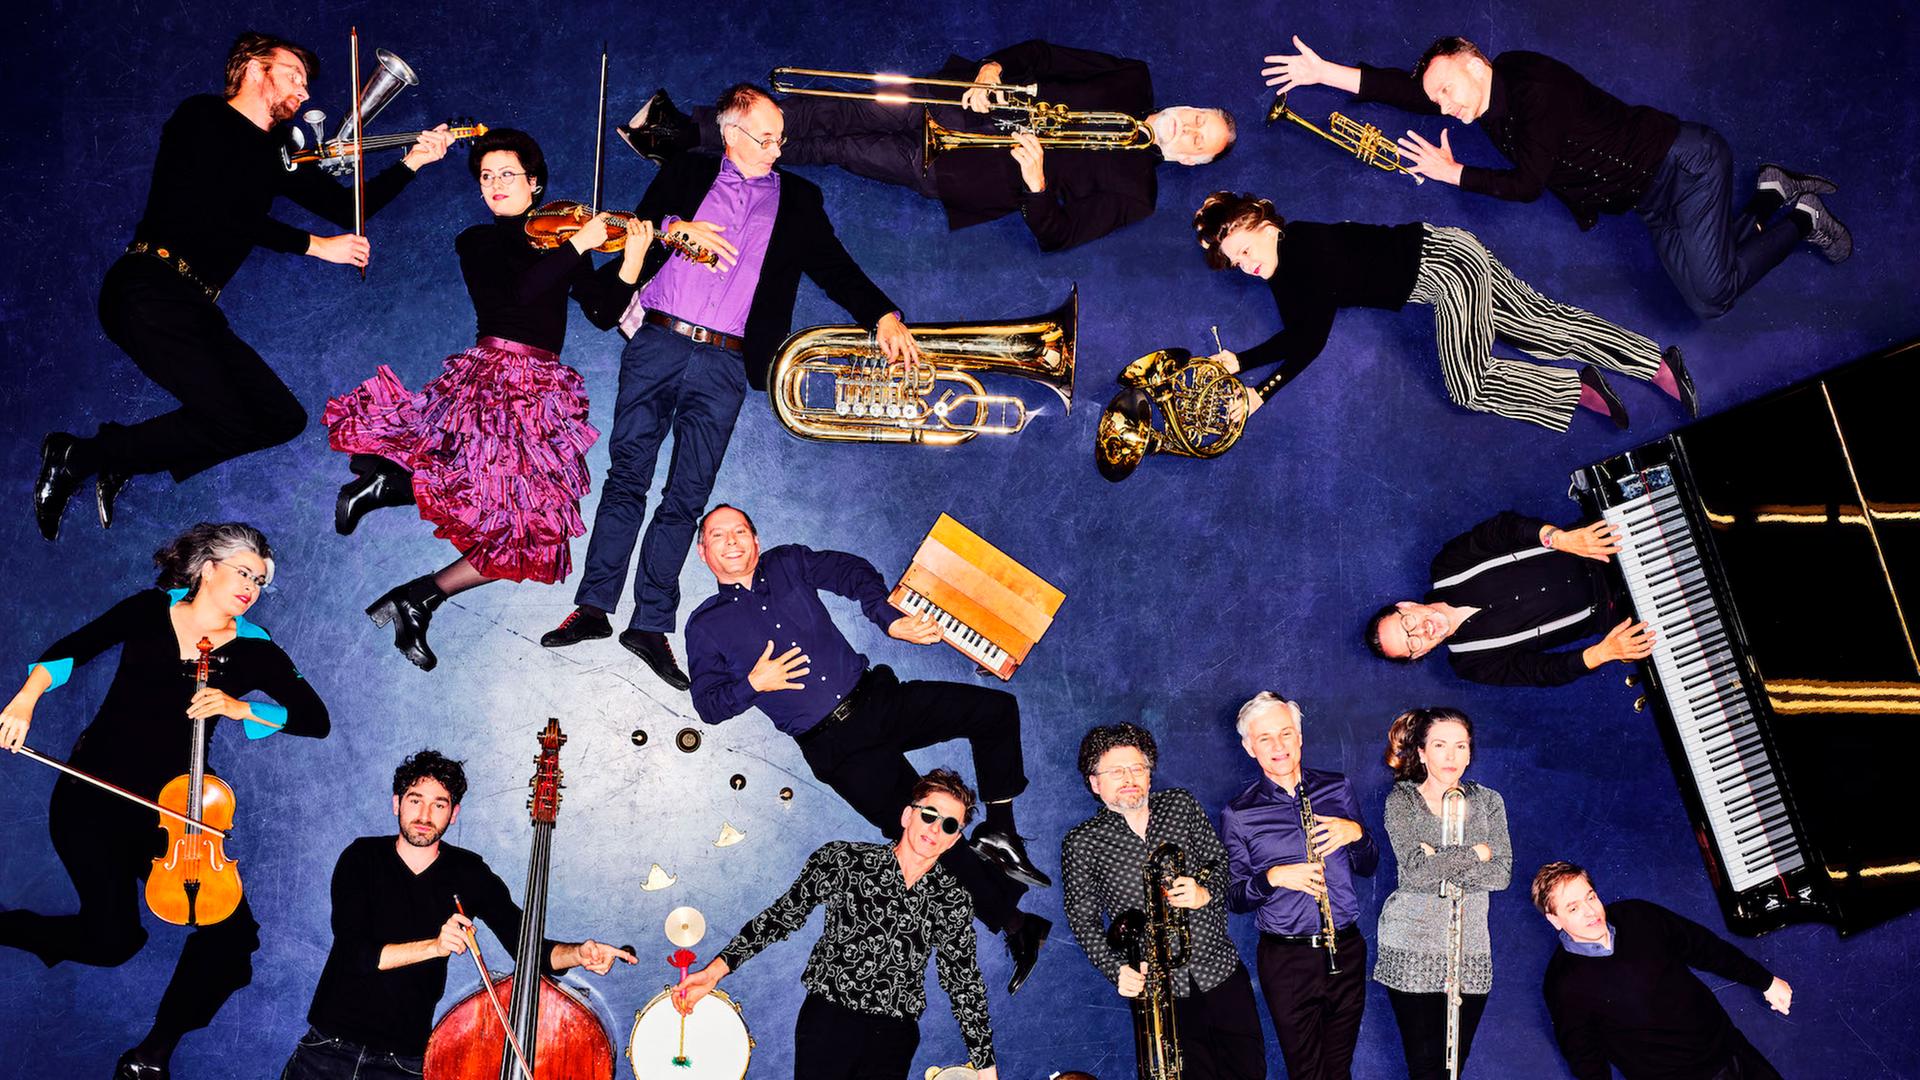 Blick aus der Vogelperspektive auf 15 Musikerinnen und Musiker, die mit ihren Instrumenten auf blauem Boden liegend posieren.